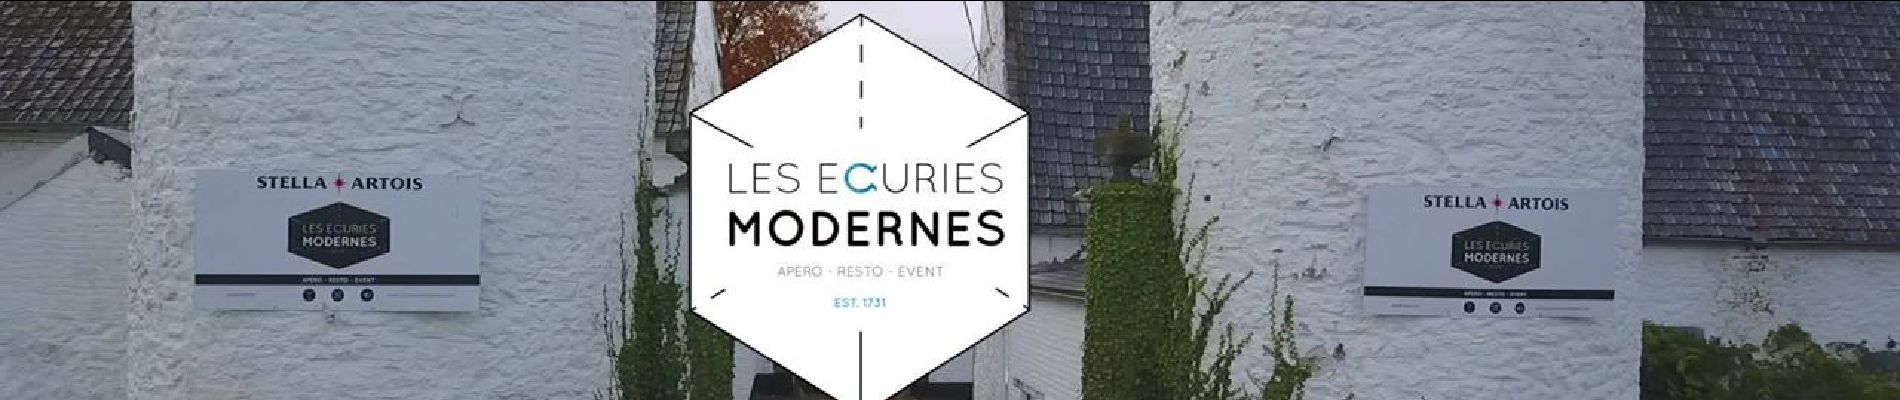 Point of interest Erquelinnes - Les écuries modernes - Photo